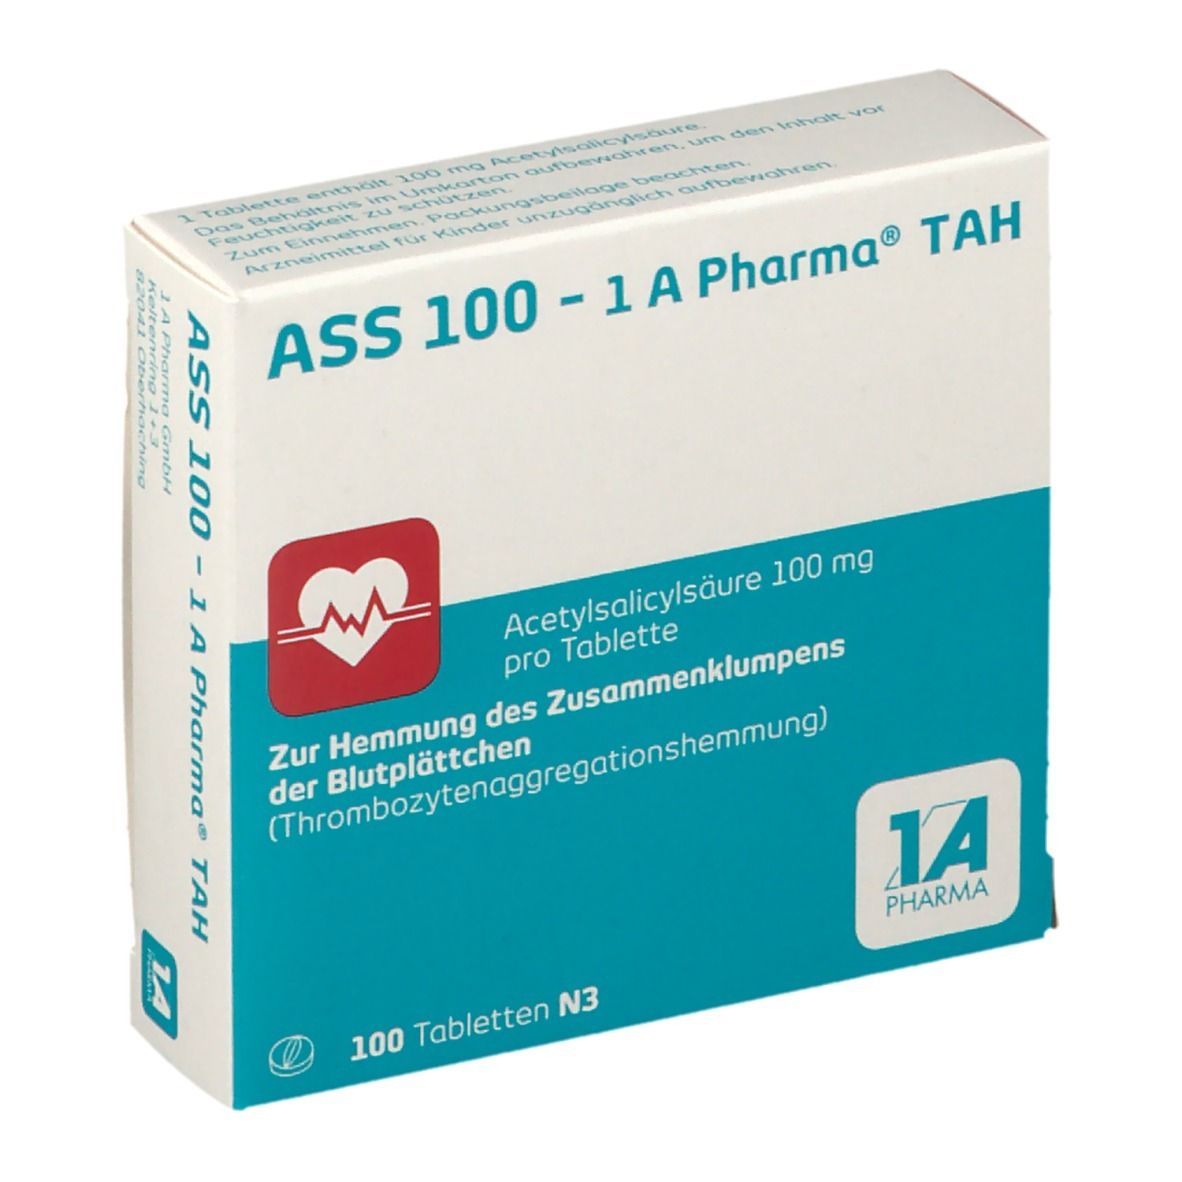 ASS 100 - 1 A Pharma® TAH